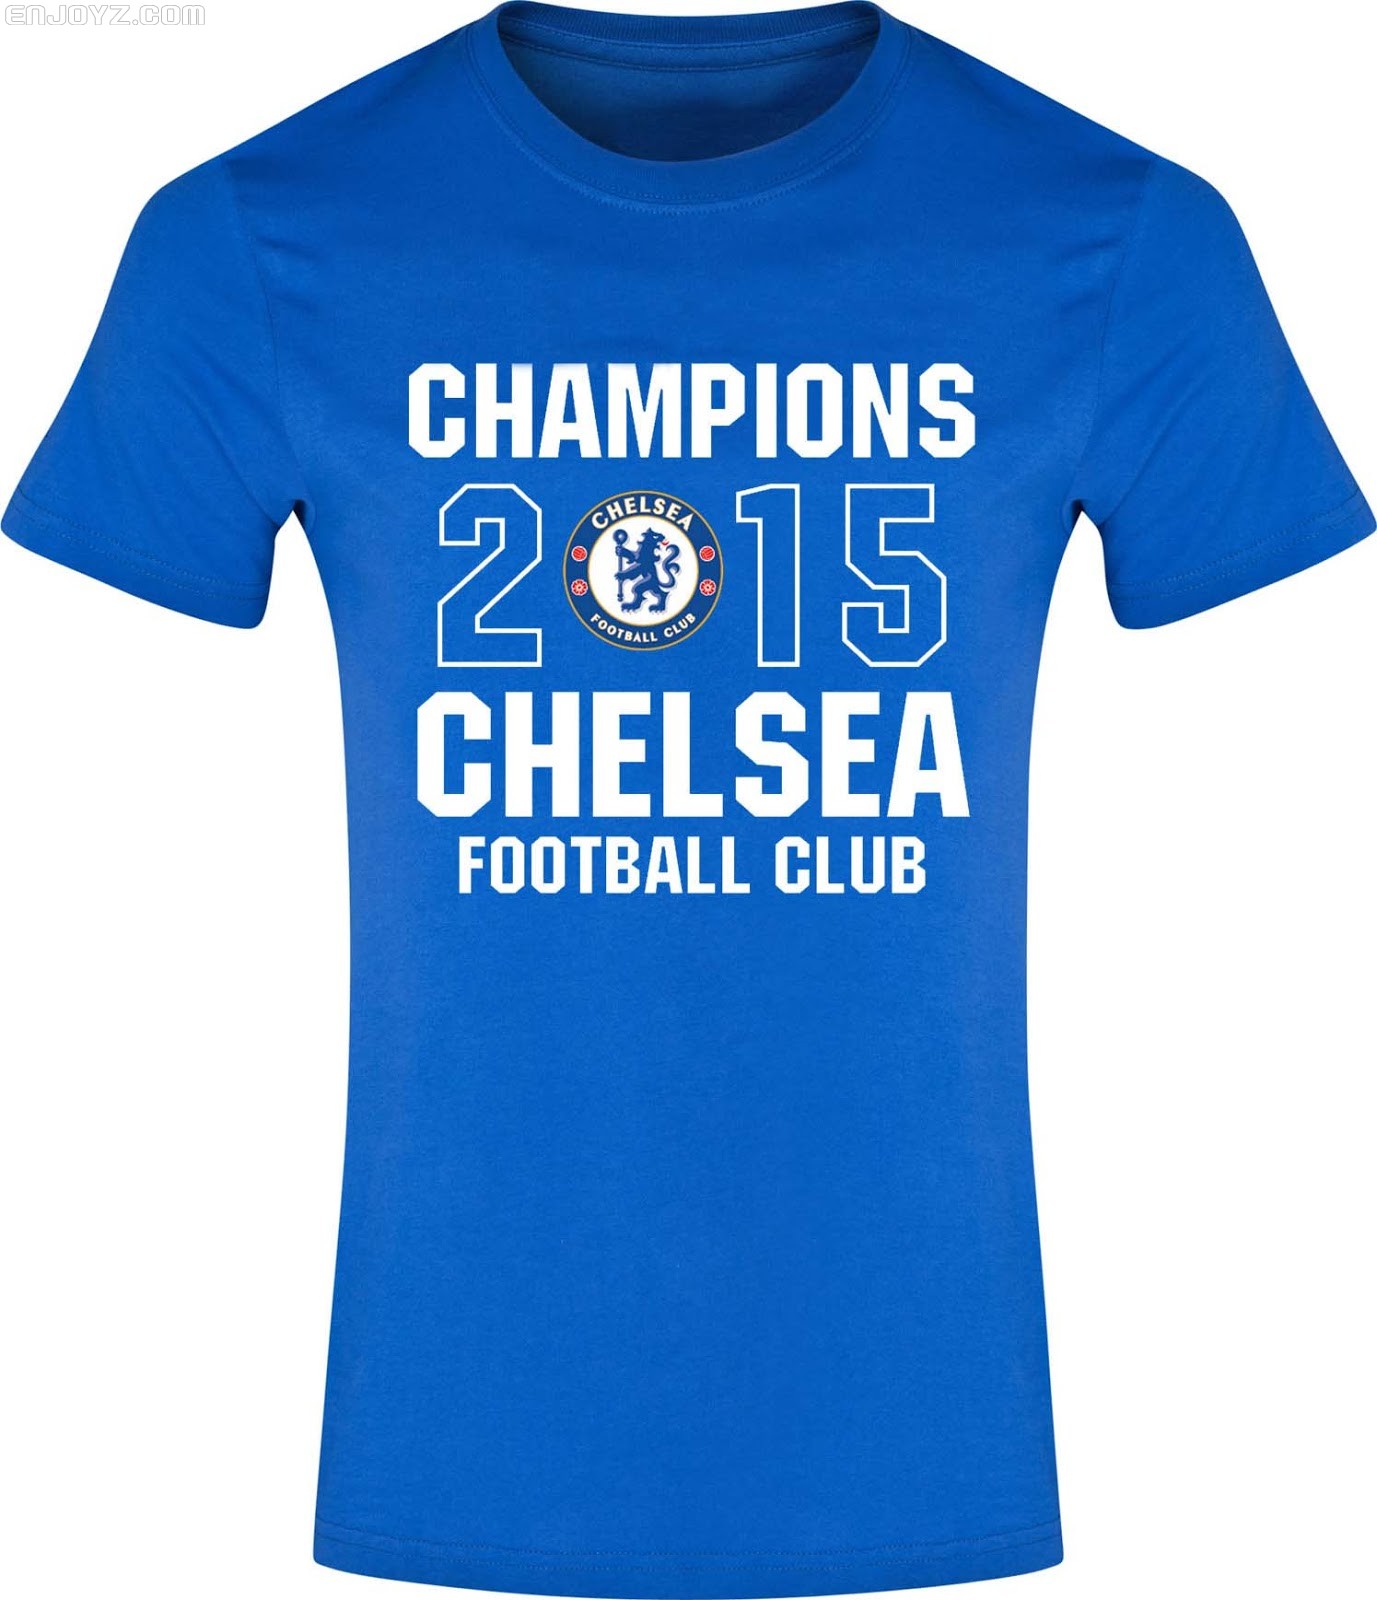 chelsea-2015-premier-league-champions-shirt (1).jpg